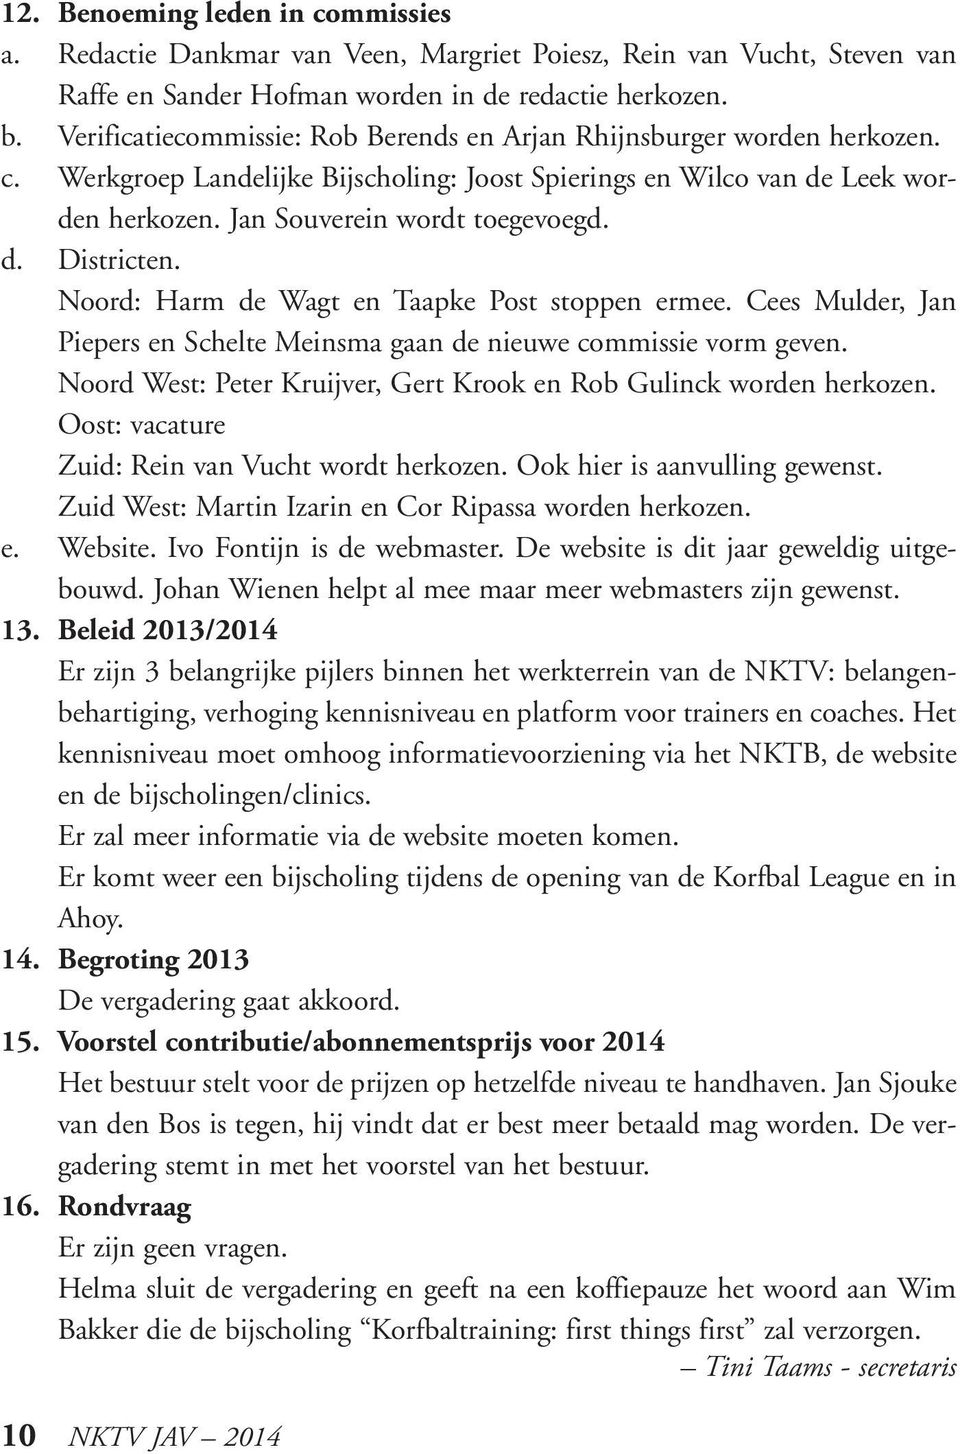 Noord: Harm de Wagt en Taapke Post stoppen ermee. Cees Mulder, Jan Piepers en Schelte Meinsma gaan de nieuwe commissie vorm geven.